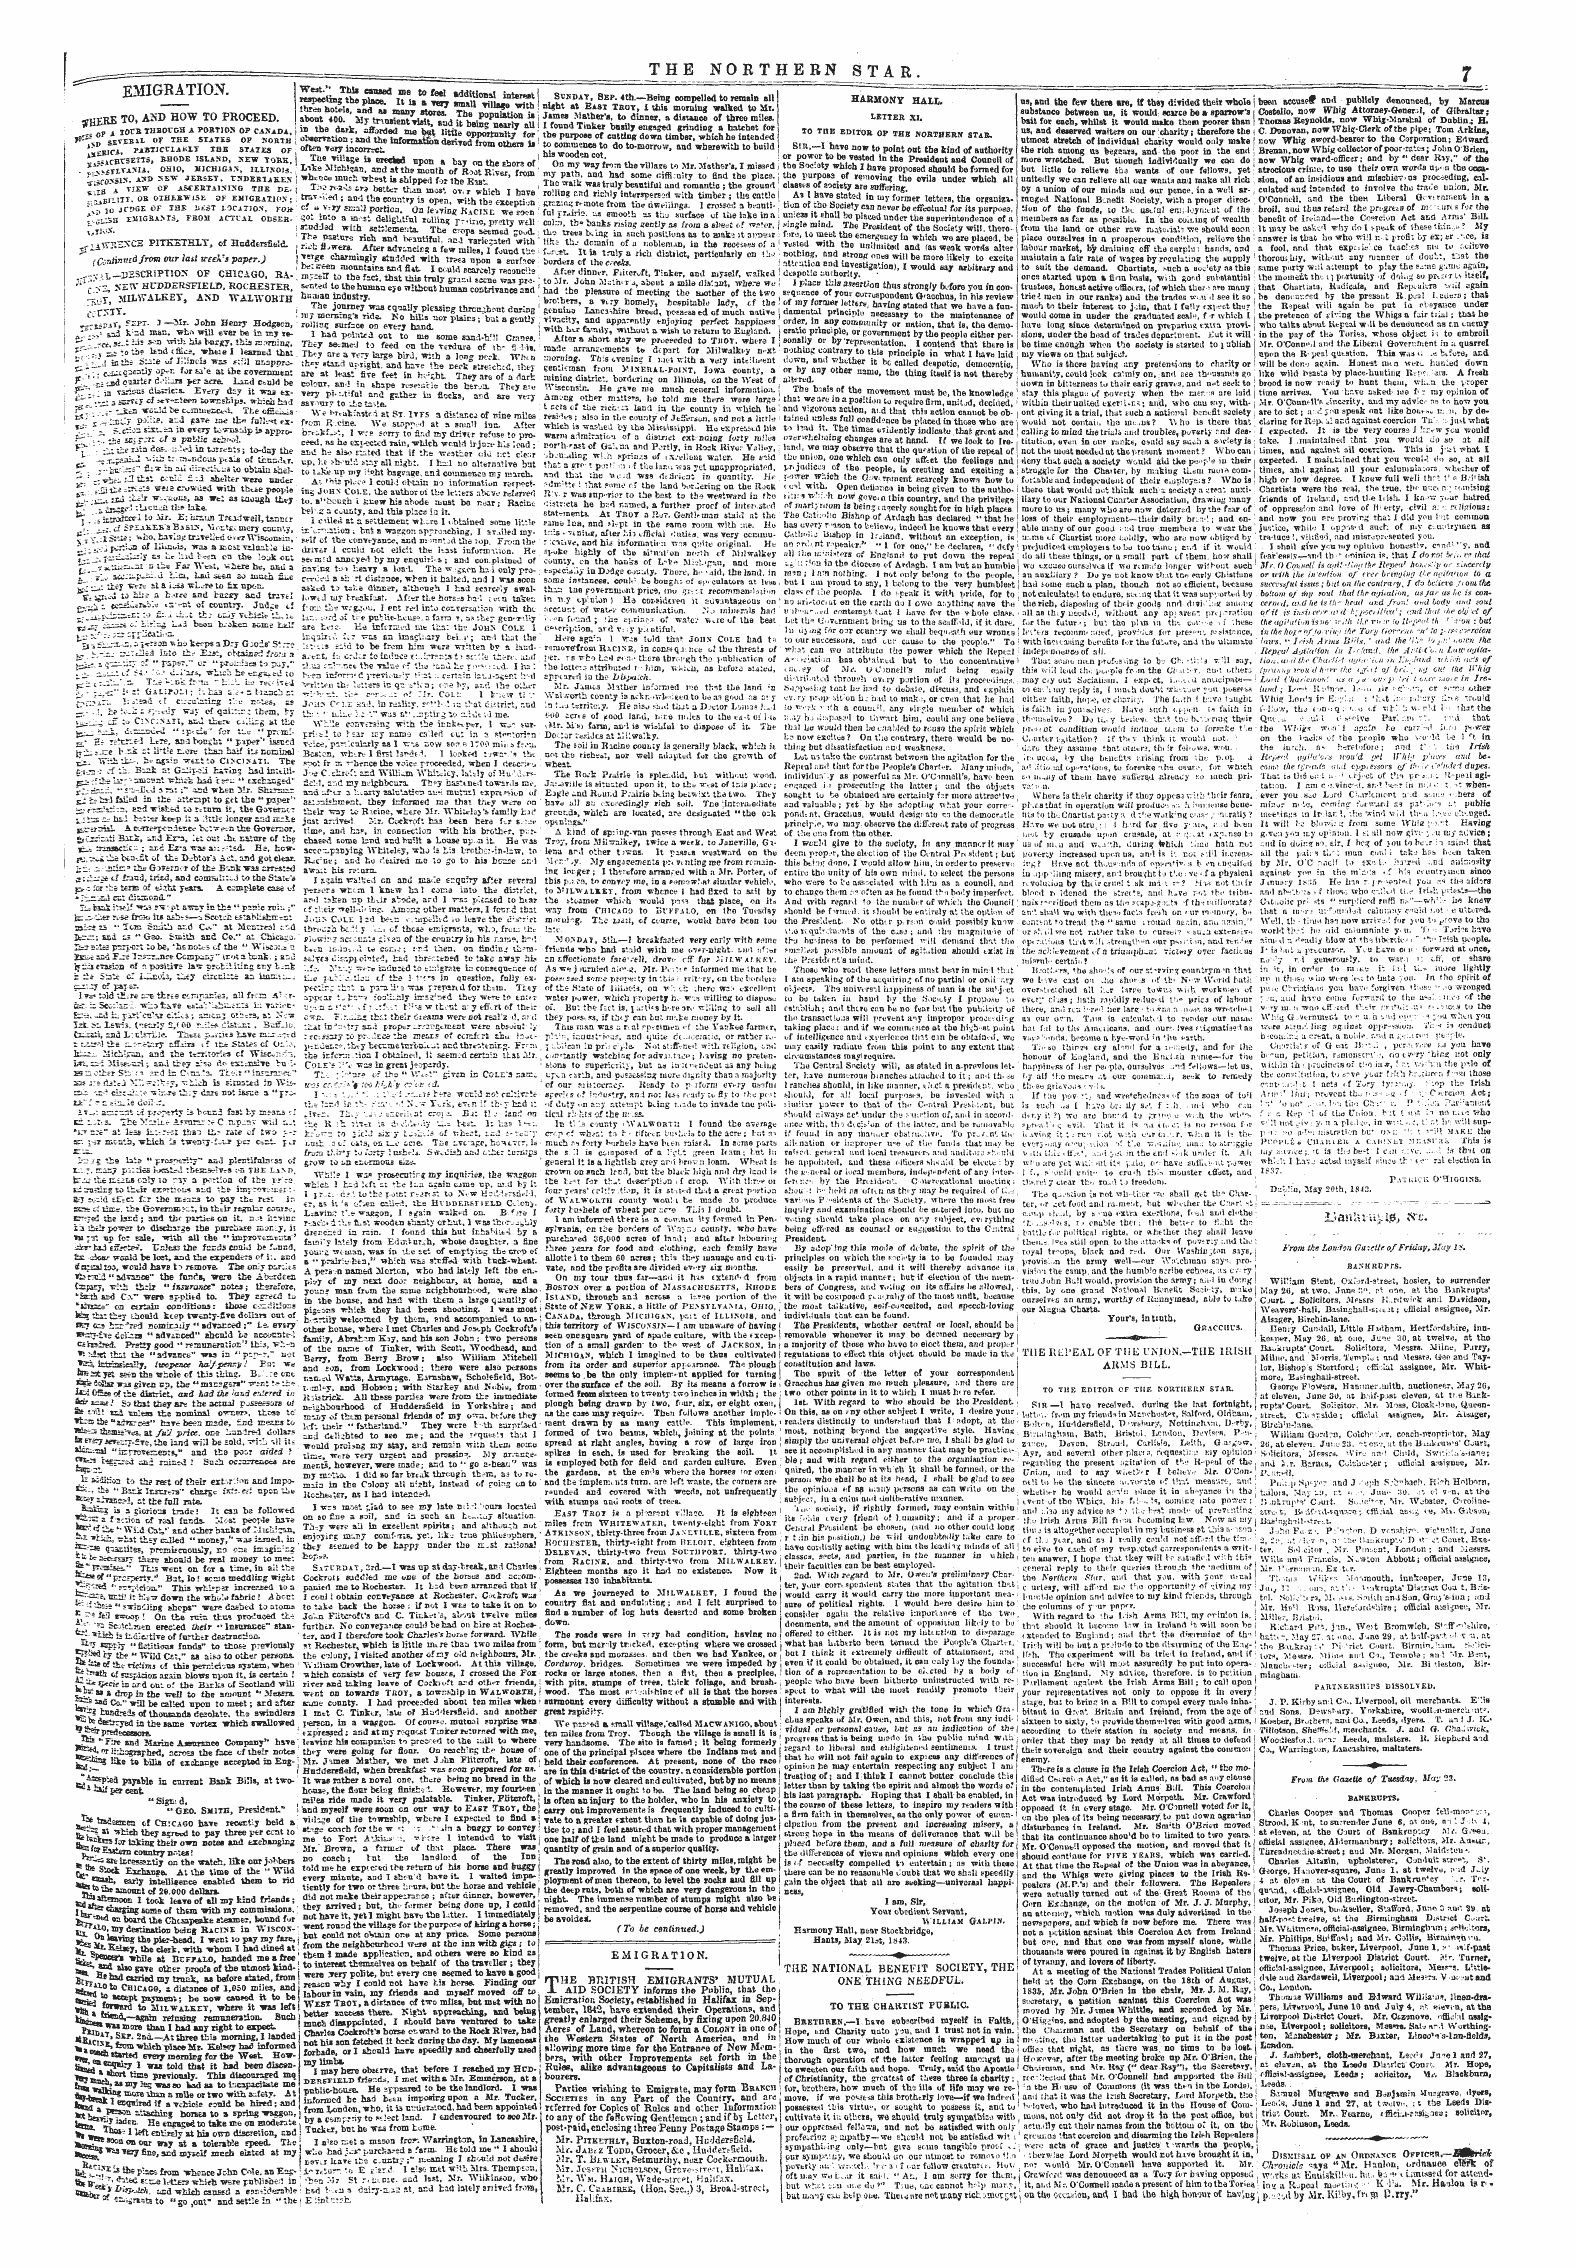 Northern Star (1837-1852): jS F Y, 5th edition - I.'»Au"Ai U&Gt; I^ &C.